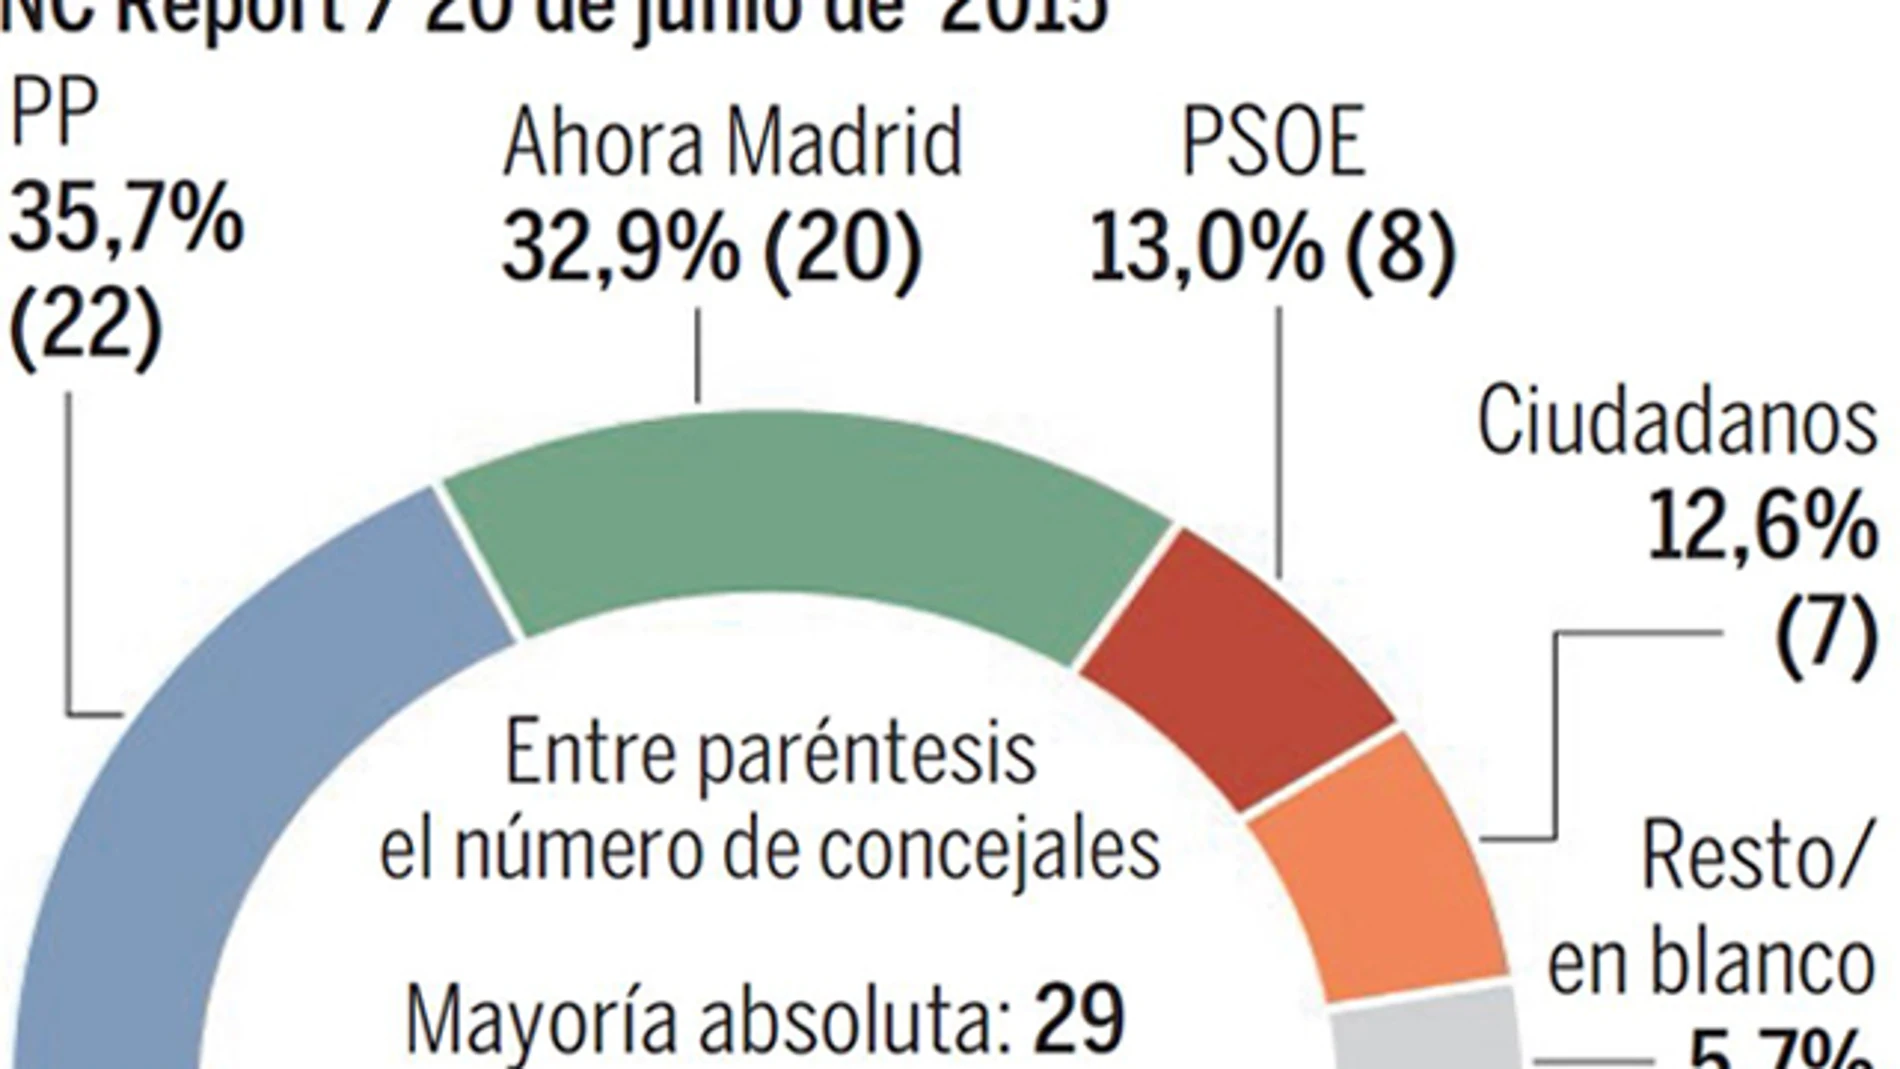 El PP gobernaría hoy Madrid y el PSOE cae por su pacto con Podemos